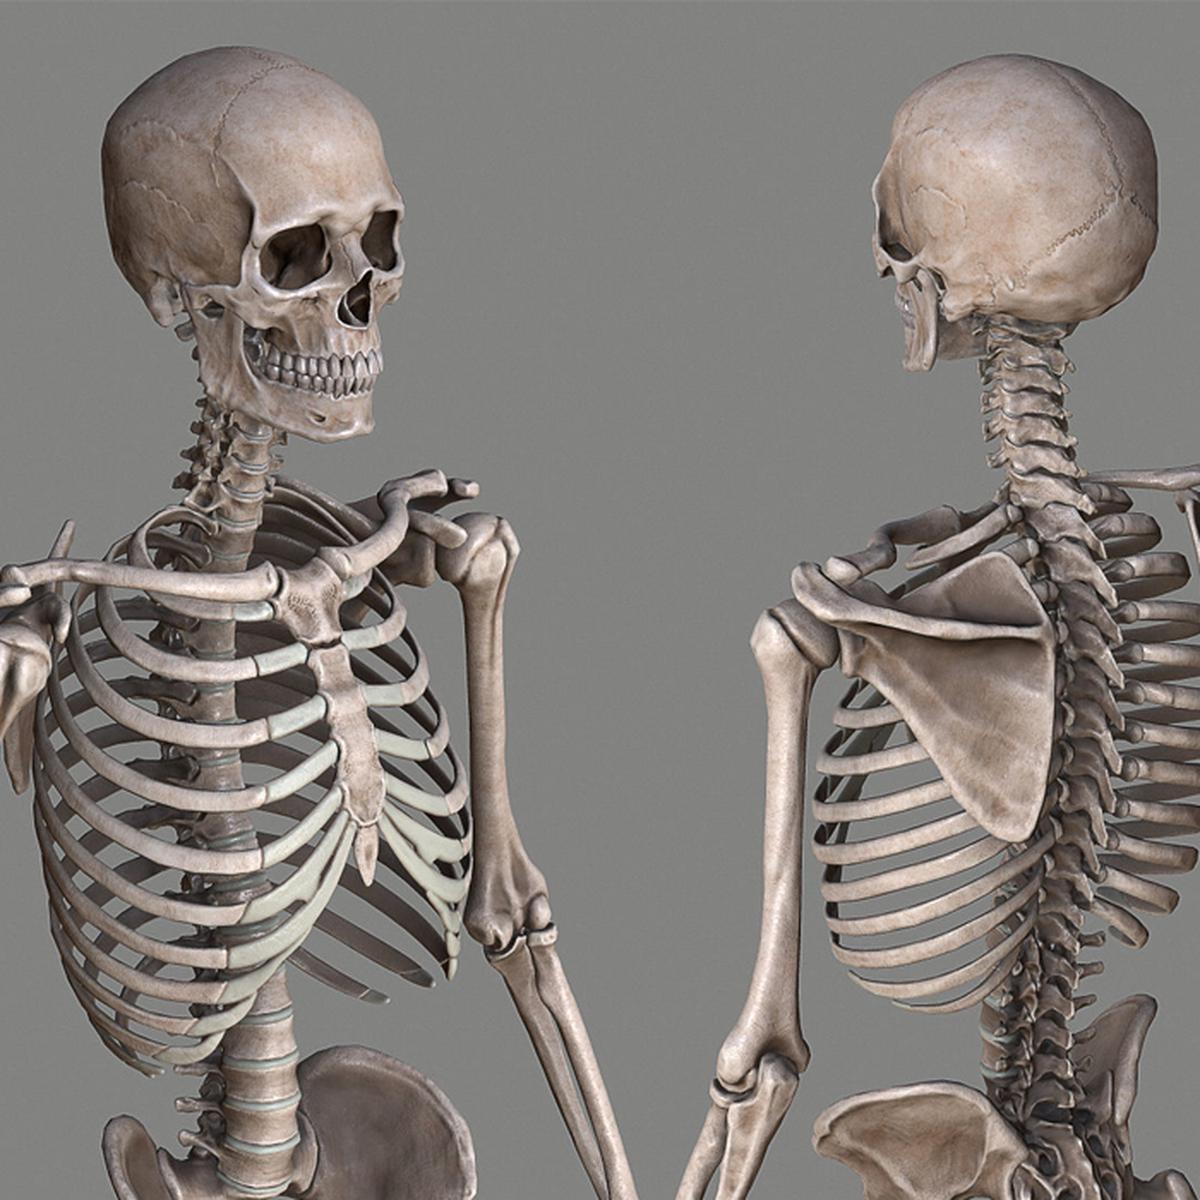 Google, Tutorial, cómo activar el esqueleto humano en 3D desde tu celular, How to active skeleton human body in smartphone, Realidad aumentada, Descargar, Download, Aplicaciones